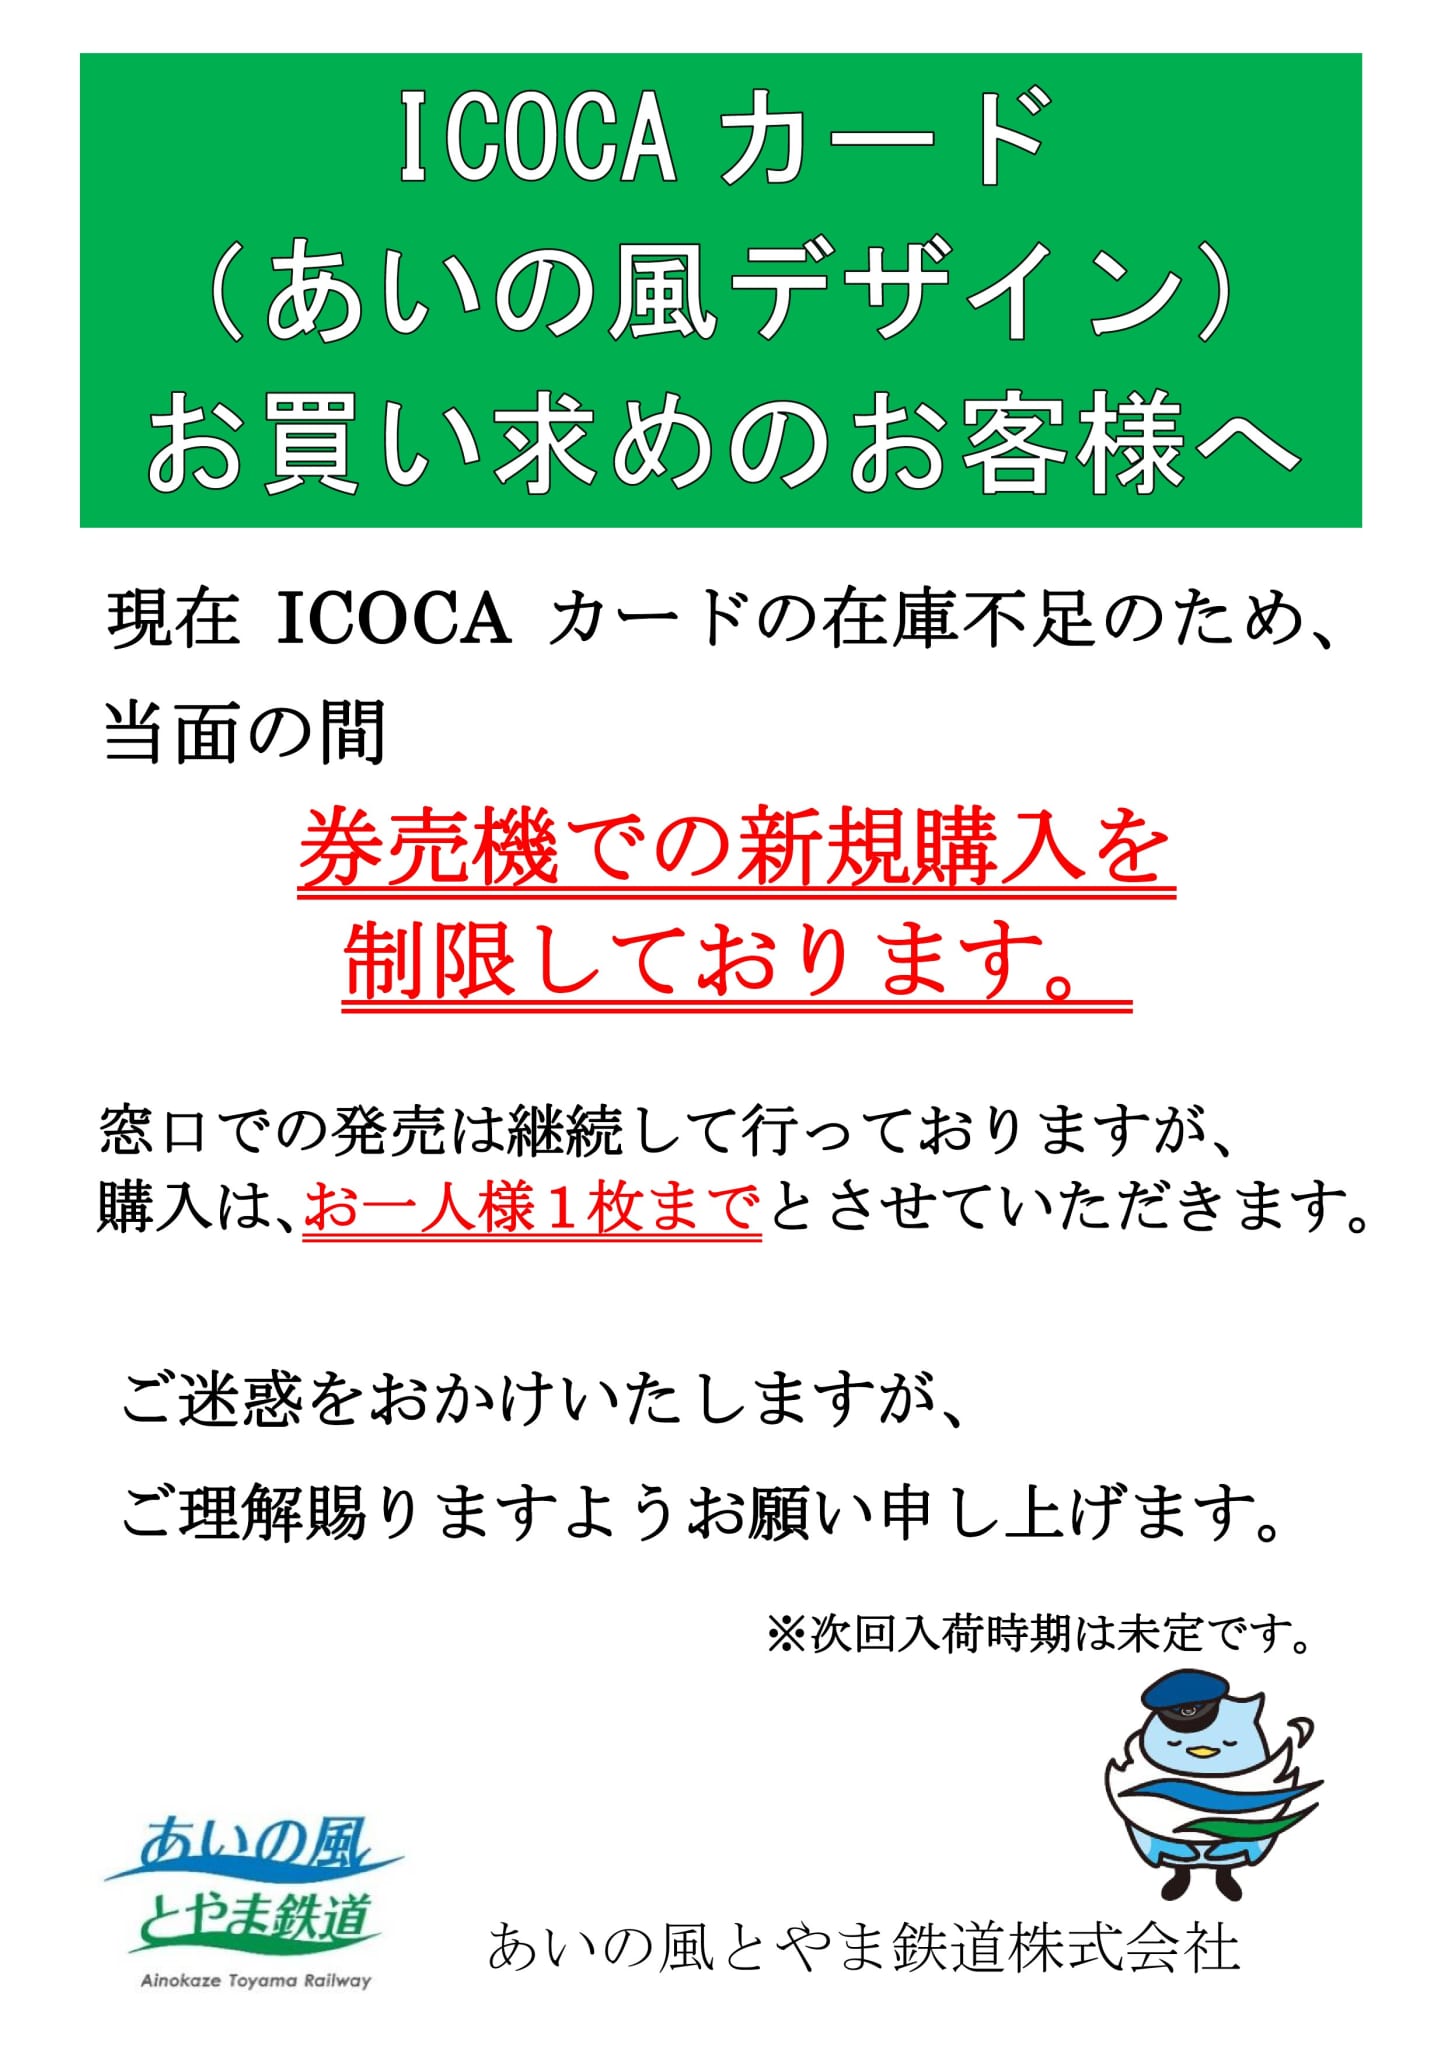 ICOCAカード発売枚数制限の駅頭掲示画像